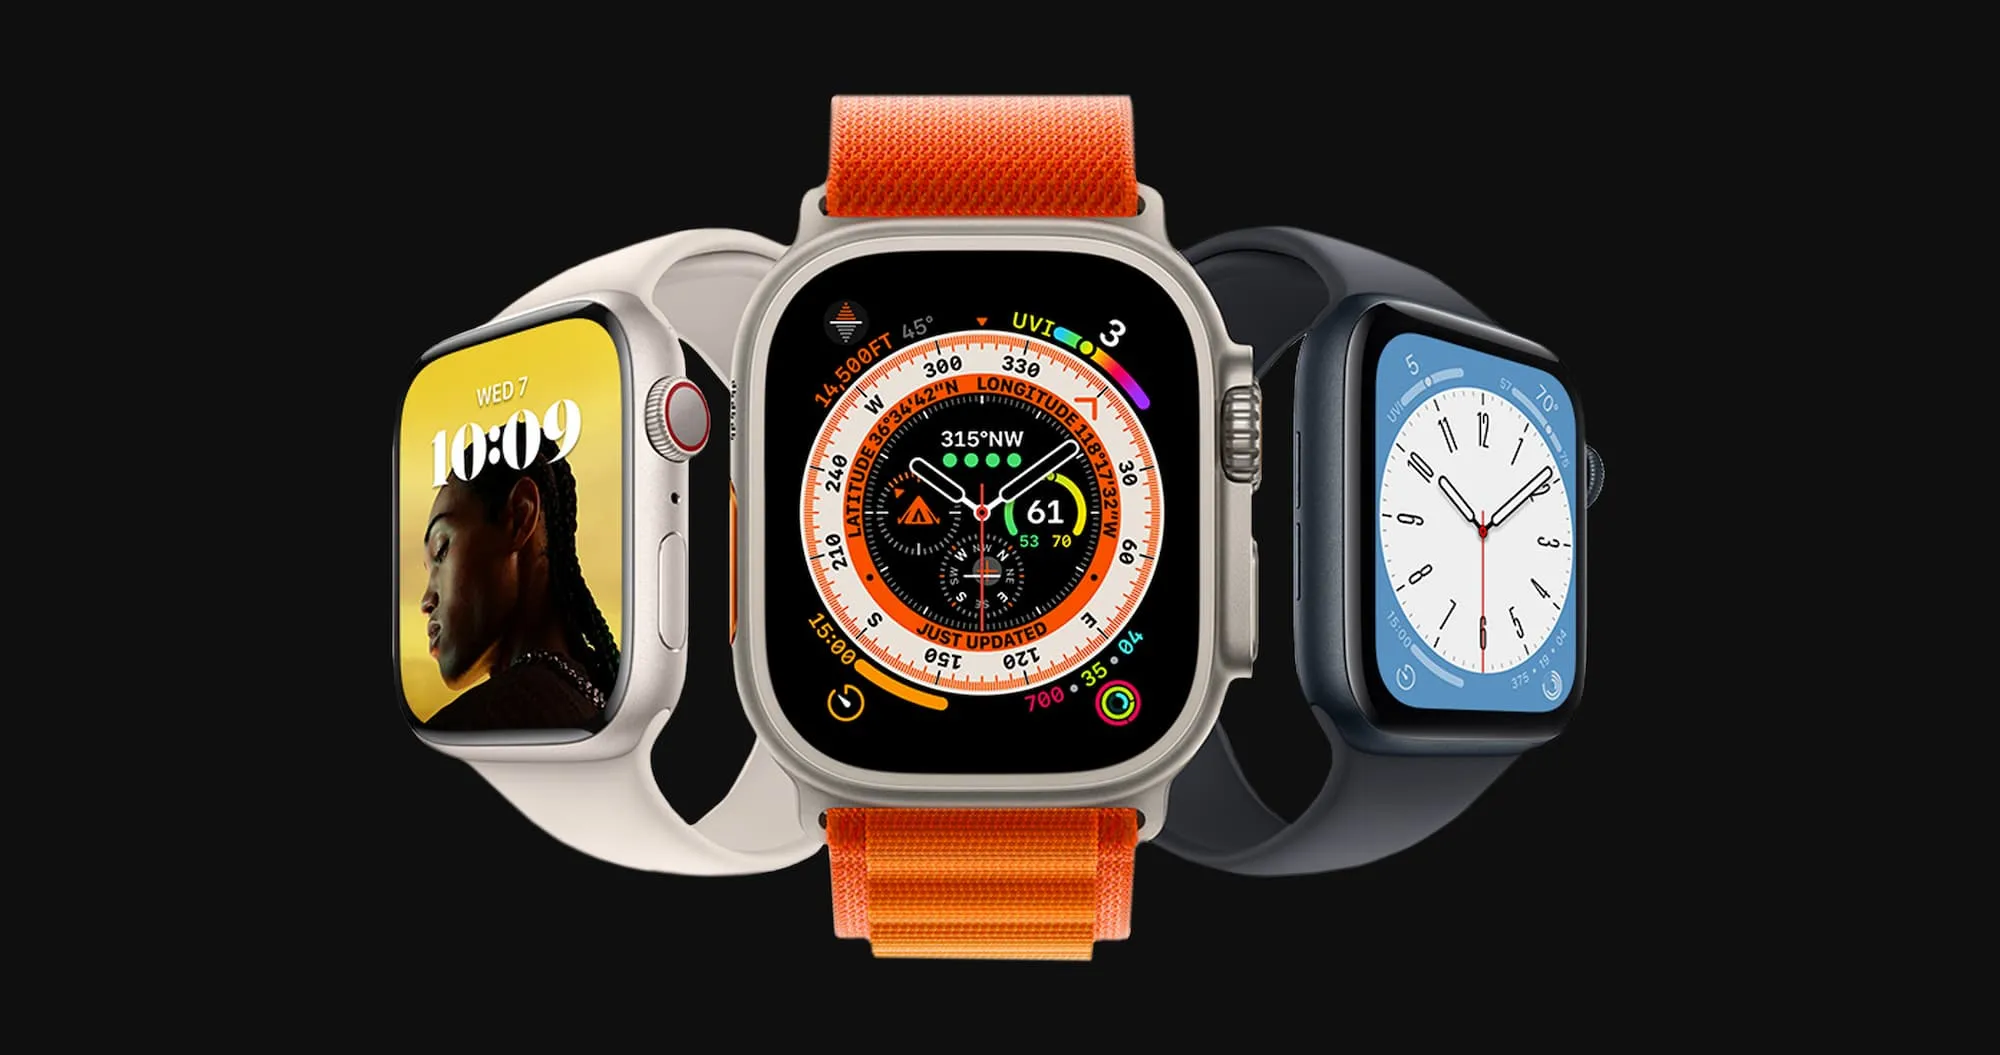 купить Apple Watch Ультра в Украине дешево и с доставкой